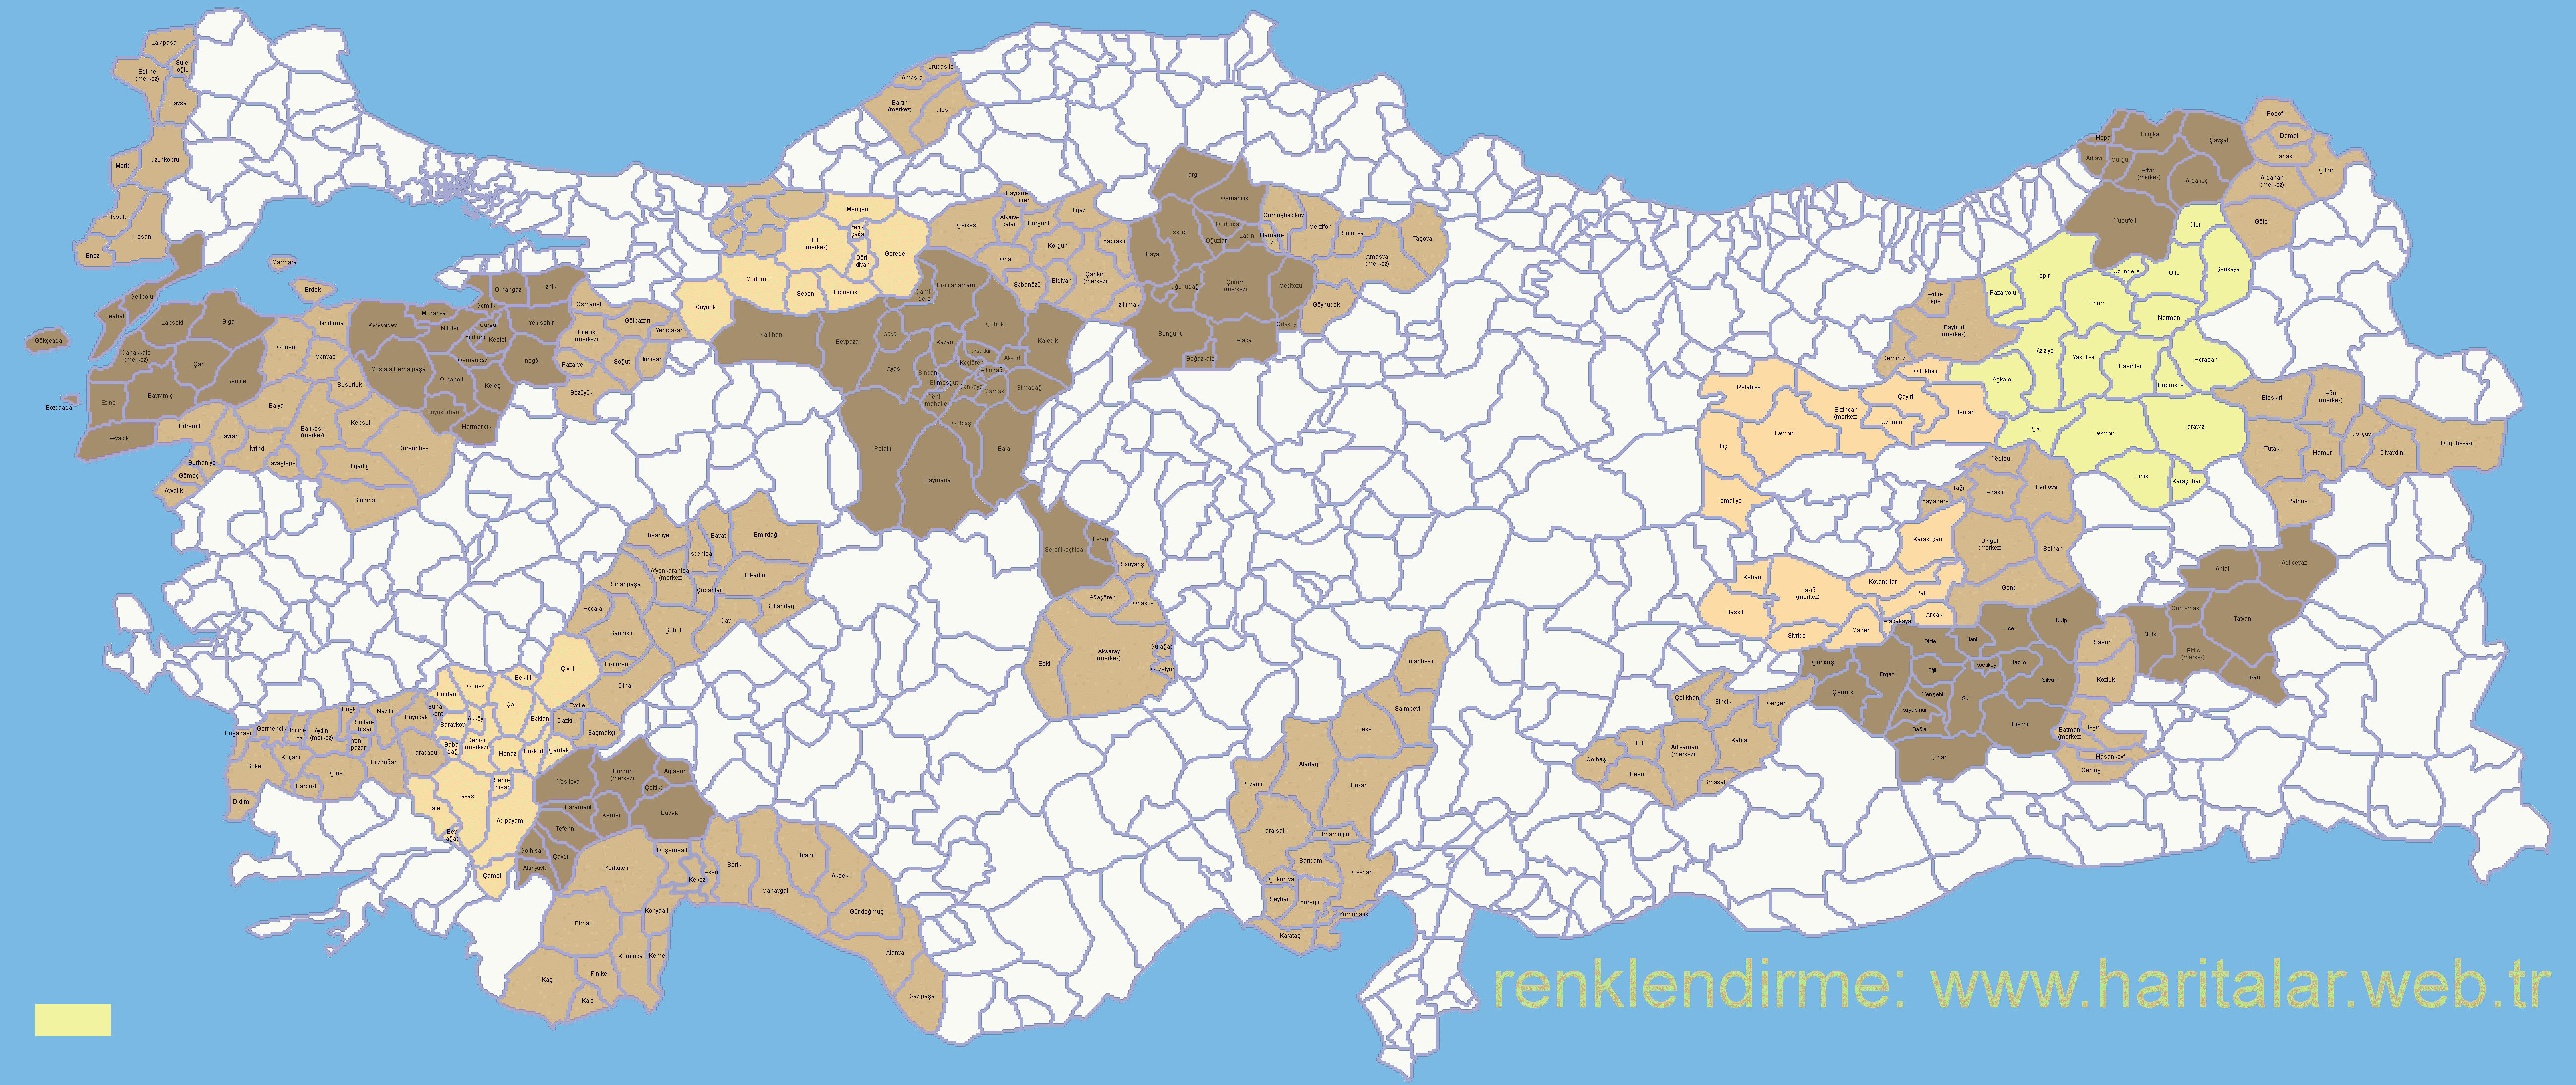  
Trkiye haritas ileler
         - 
Trkiye ileler haritas
 